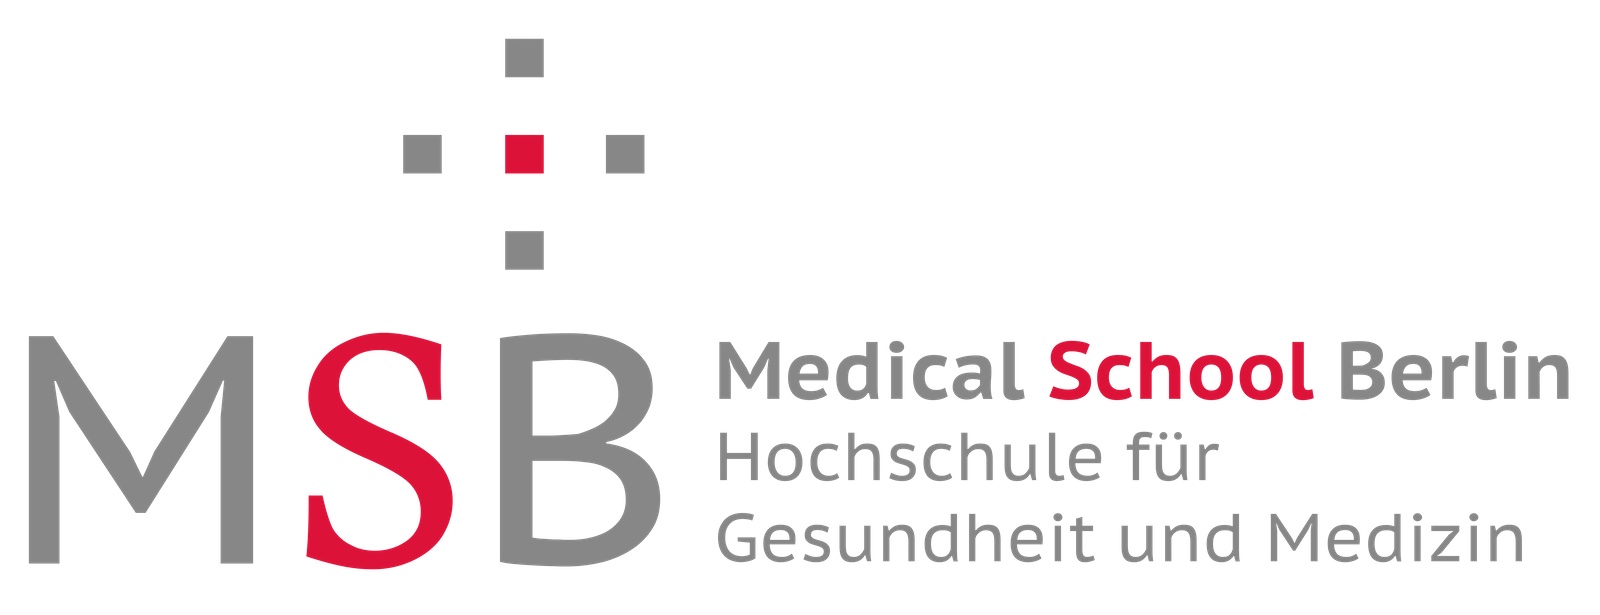 Msb logo